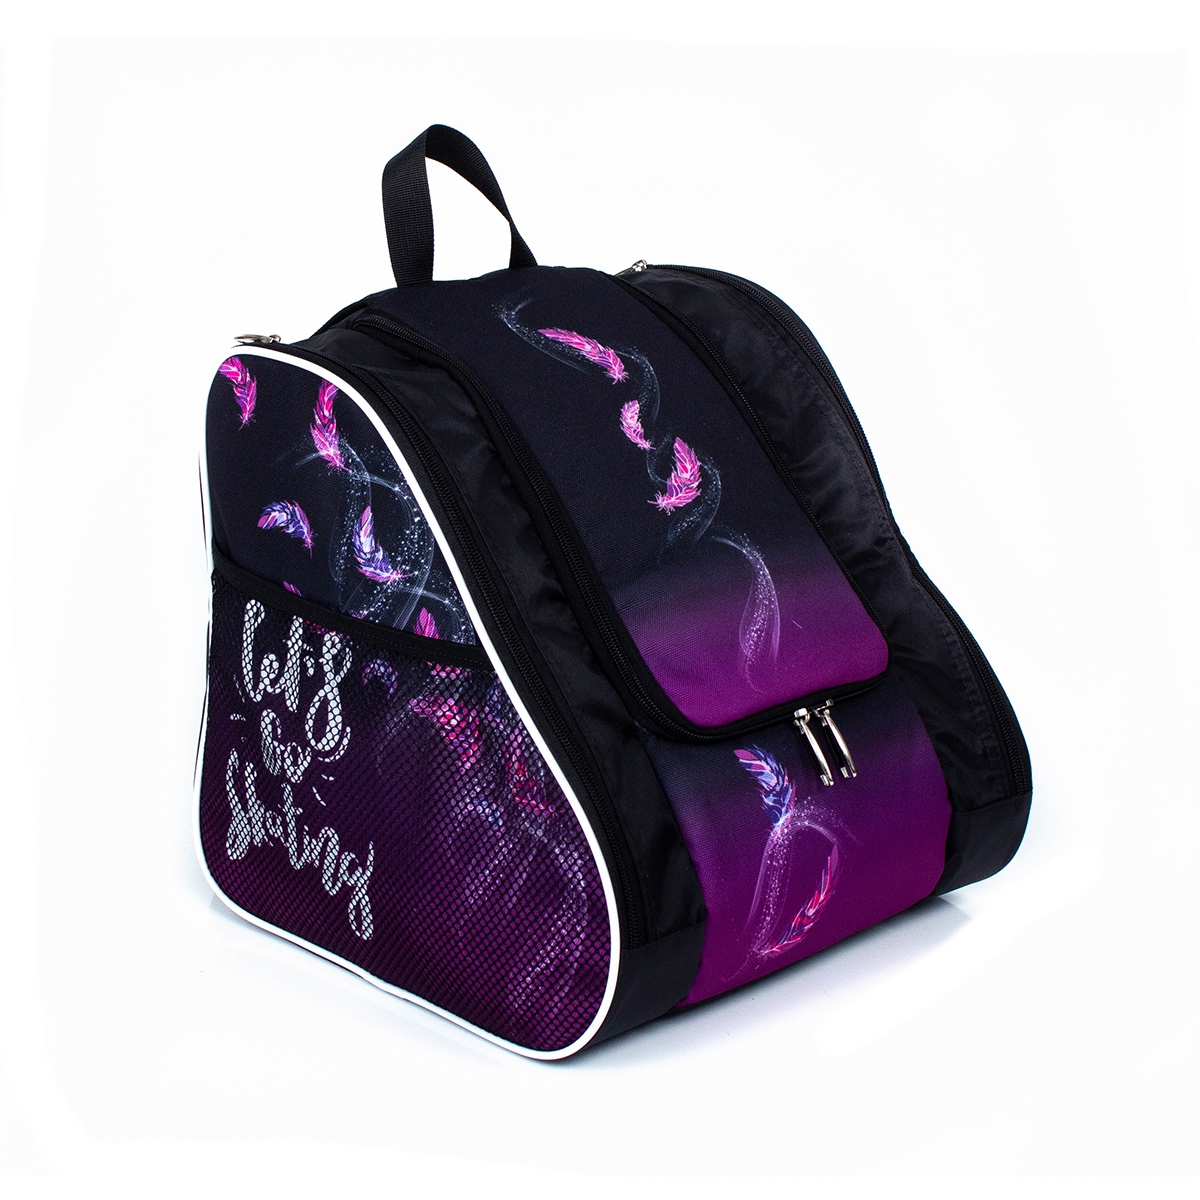 Рюкзак для коньков ProSkating Бильман Midair, фиолетовый